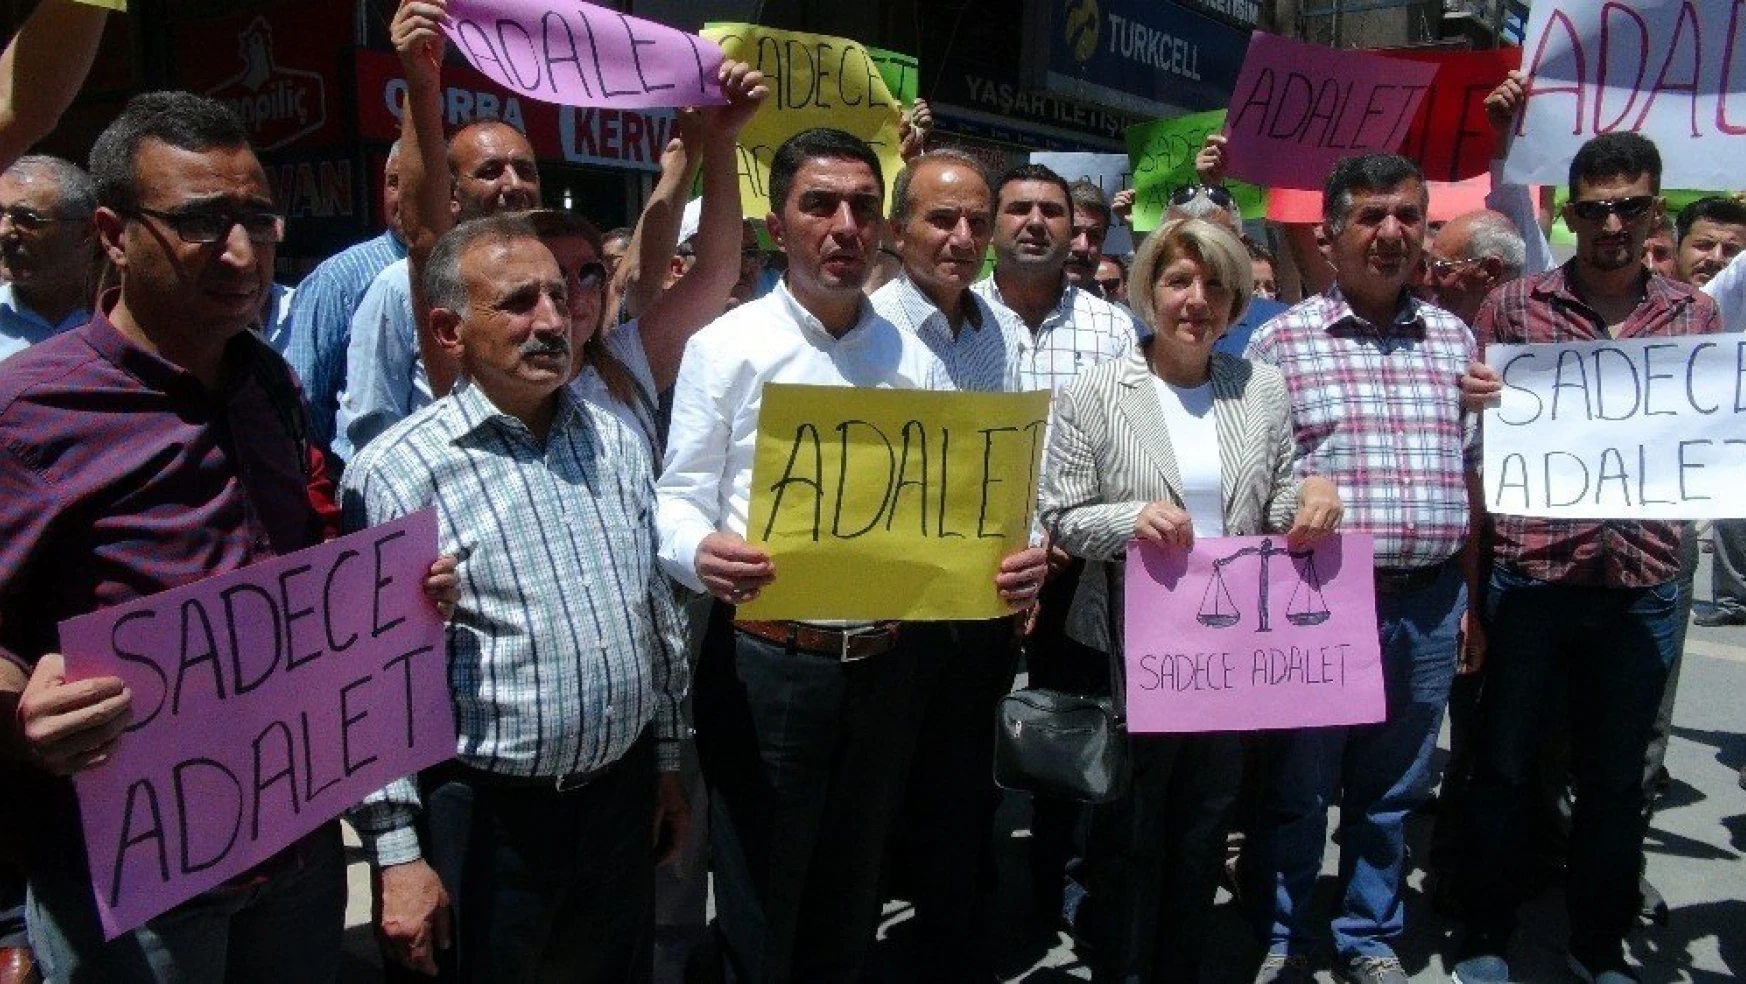 CHP Malatya'da Adalet yürüyüşüne destek
